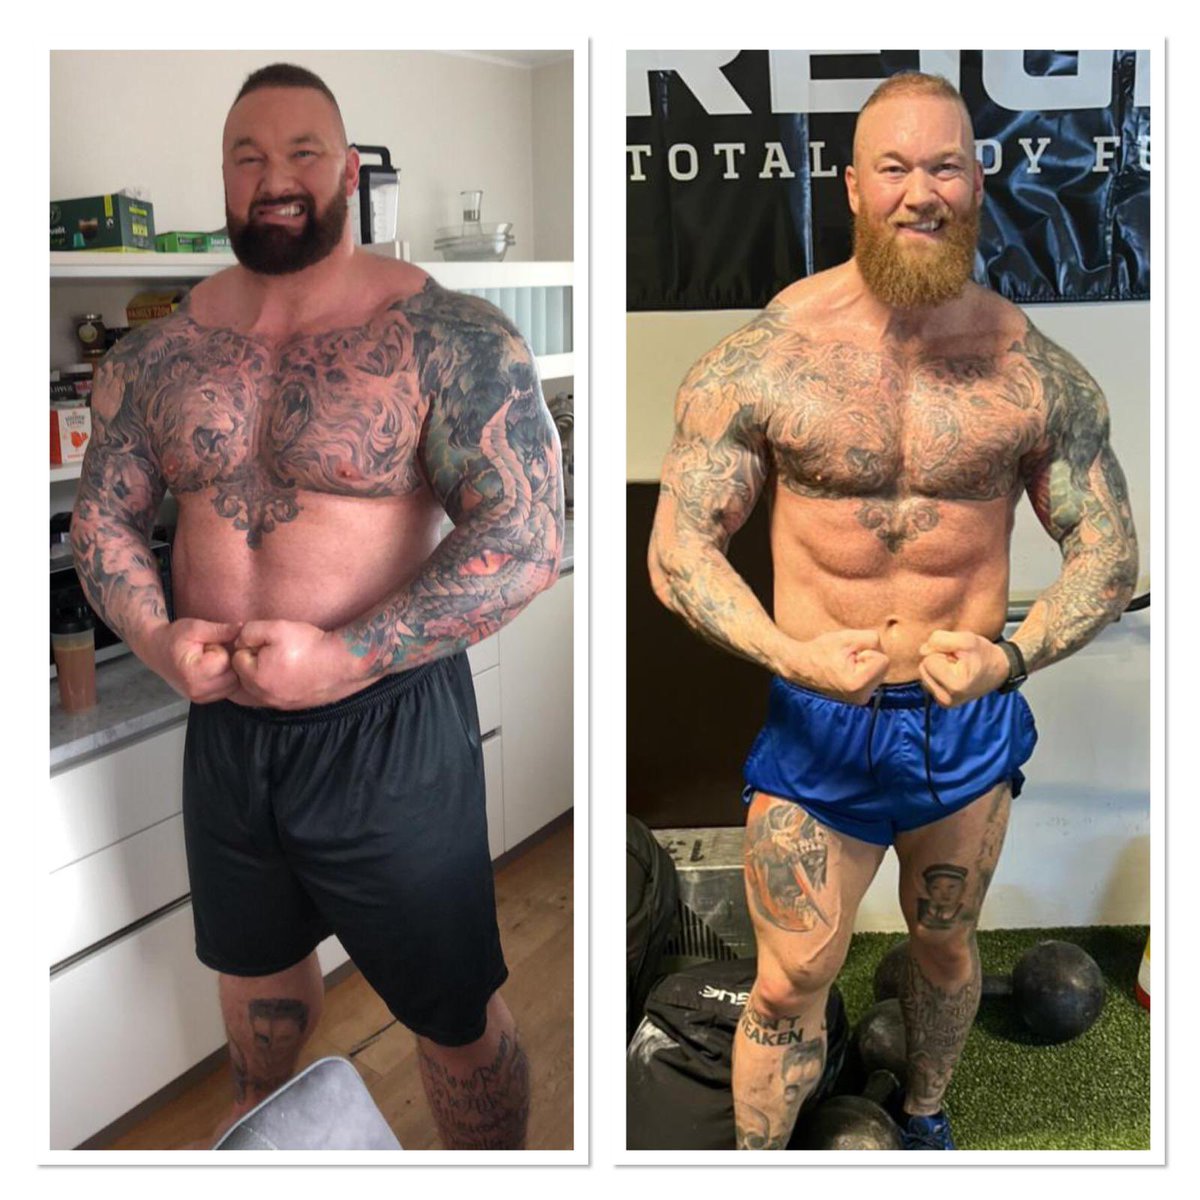 RT @ThorBjornsson_: 2020 vs 2022
Full Thor vs Half Thor
Peak strength vs Peak fitness
205kg vs 145kg https://t.co/2rjWFE9221